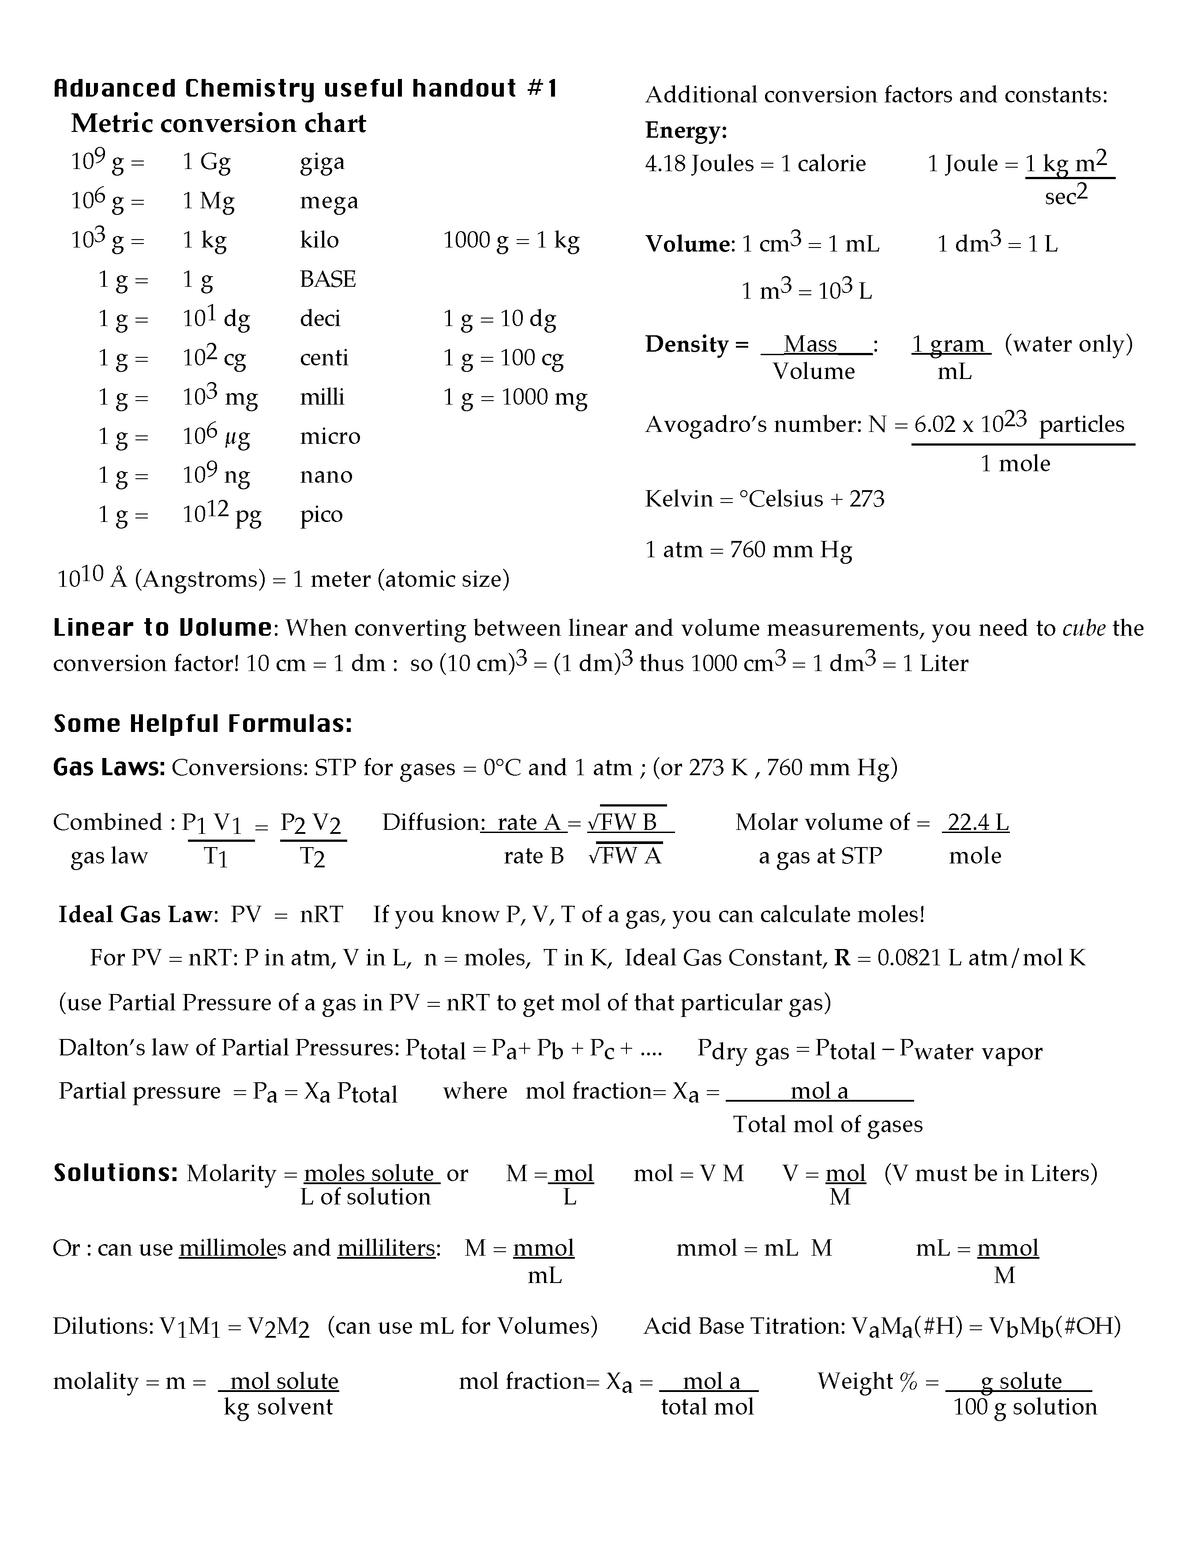 chemistry conversion chart cheat sheet